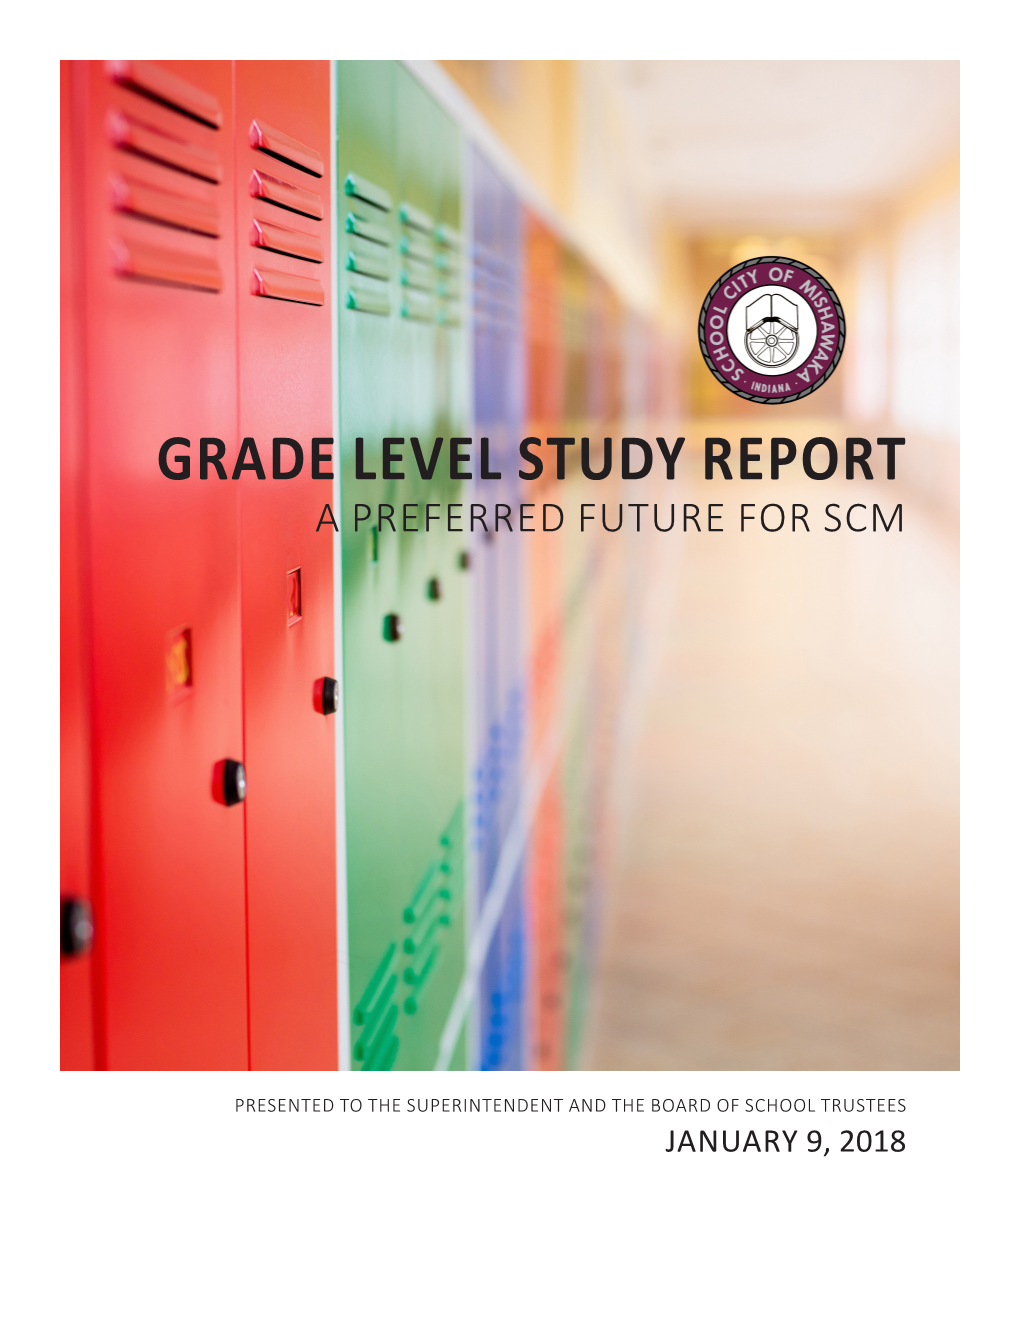 Grade Level Study Report a Preferred Future for Scm